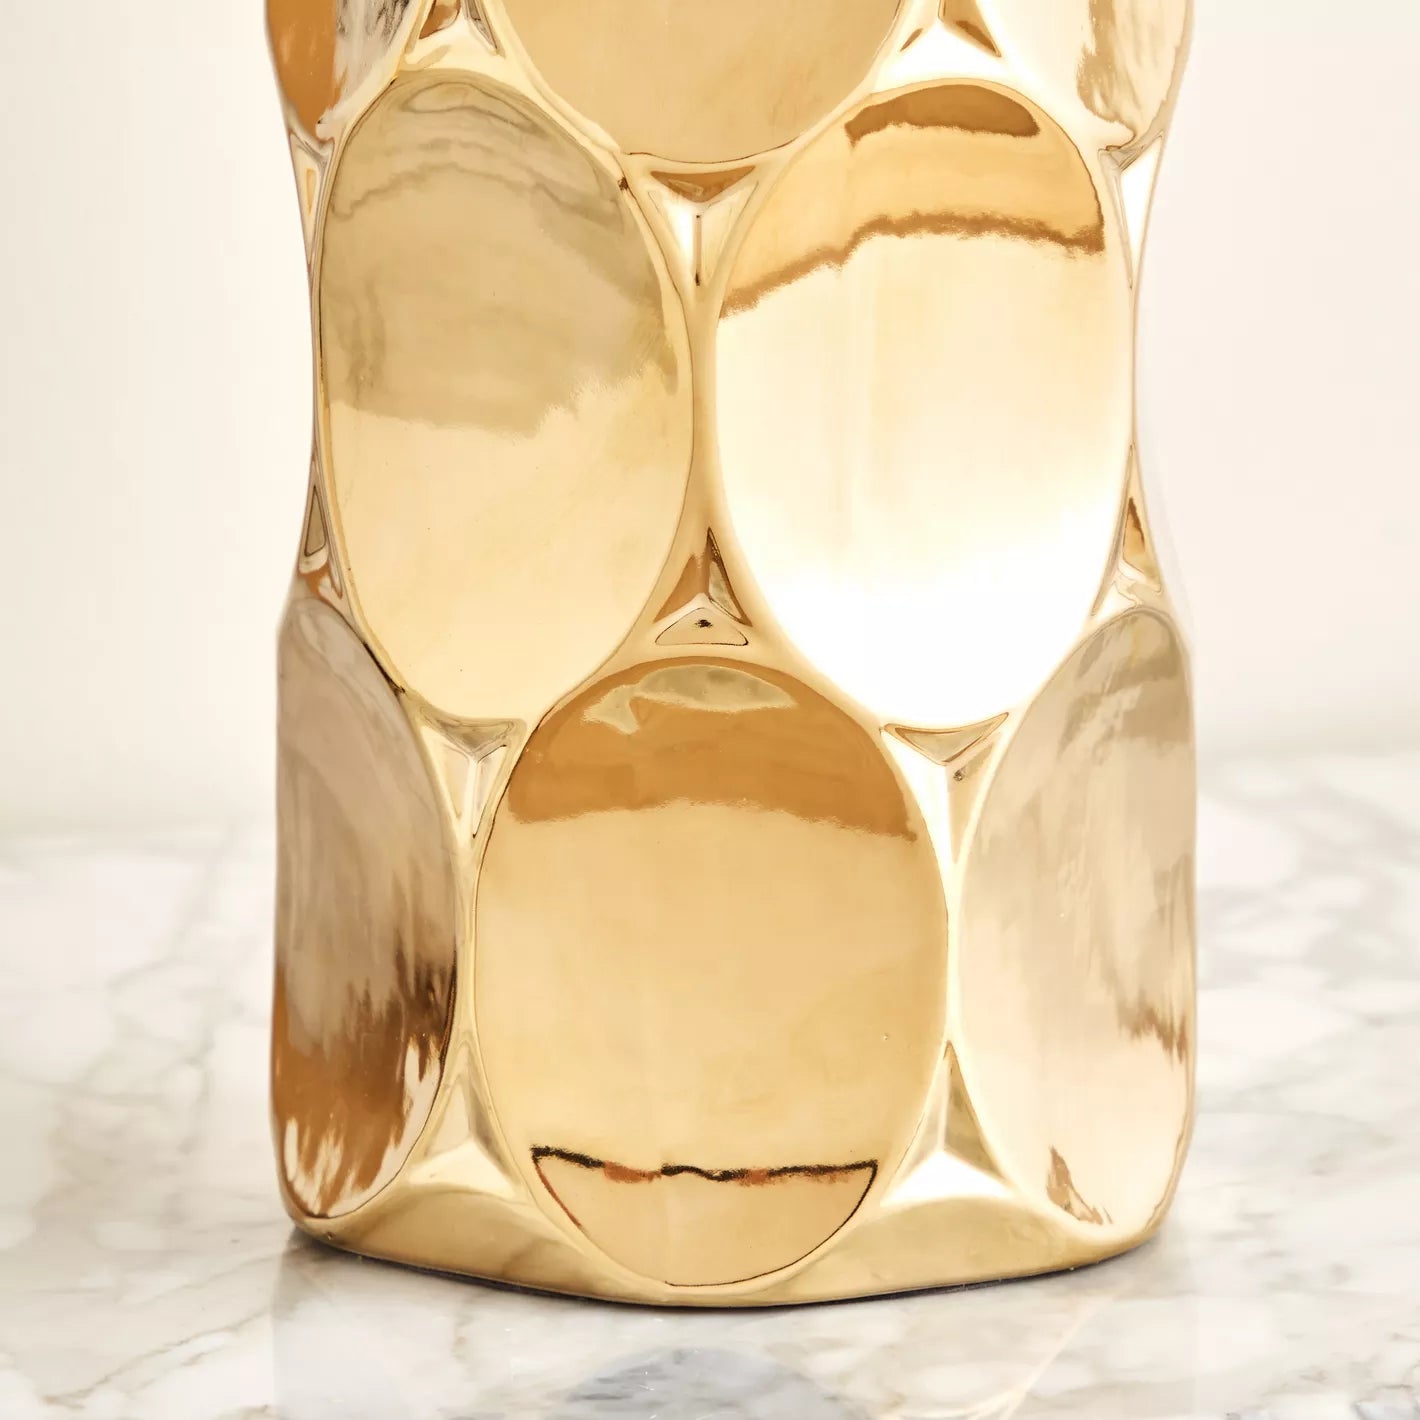 Recha Ceramic Table Lamp - 52 cm